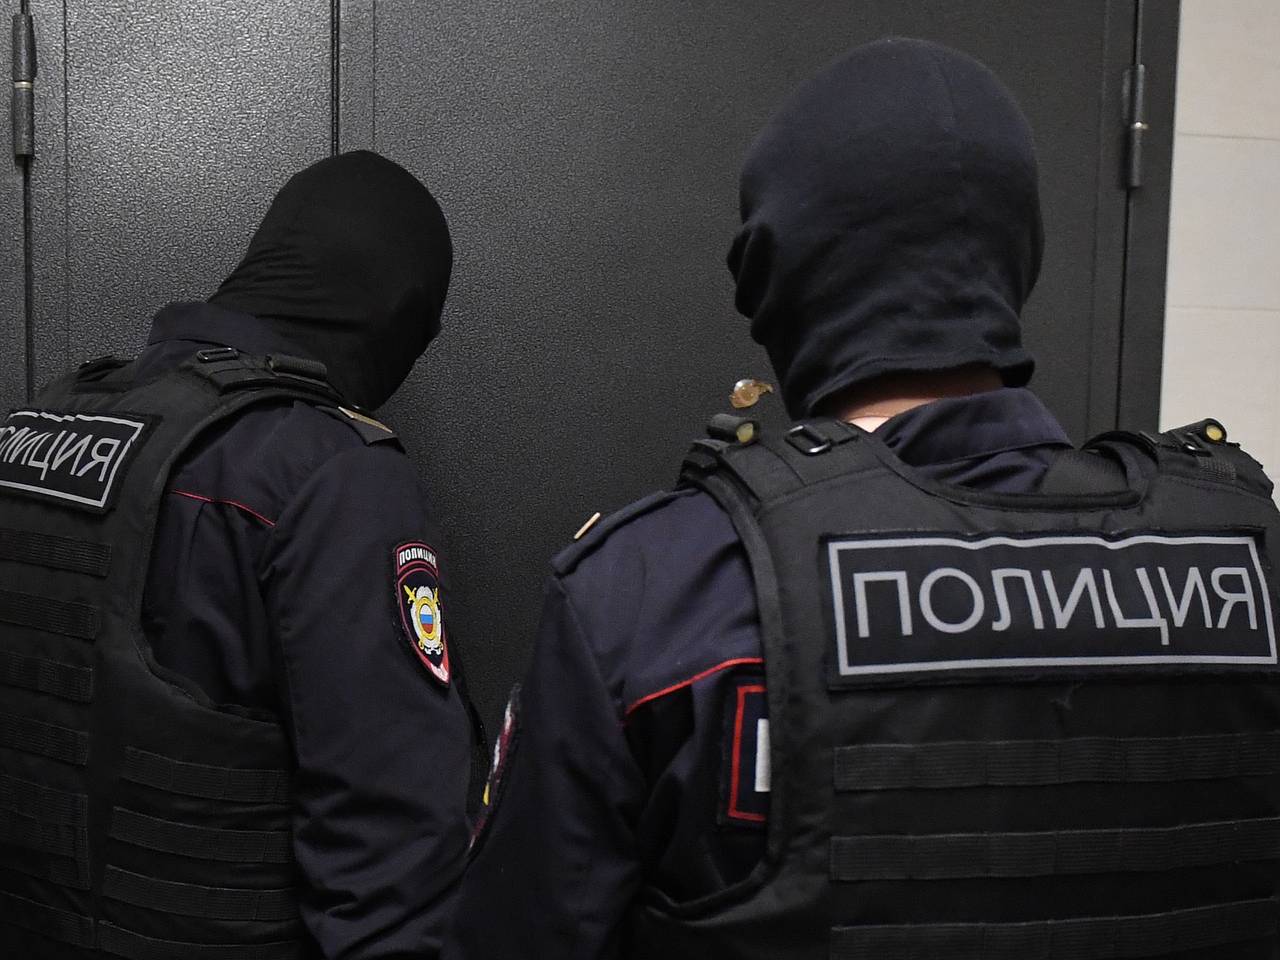 Американца задержали в Москве за нецензурную лексику в адрес полицейских, которые пришли к нему с обыском по делу о краже биткойна 